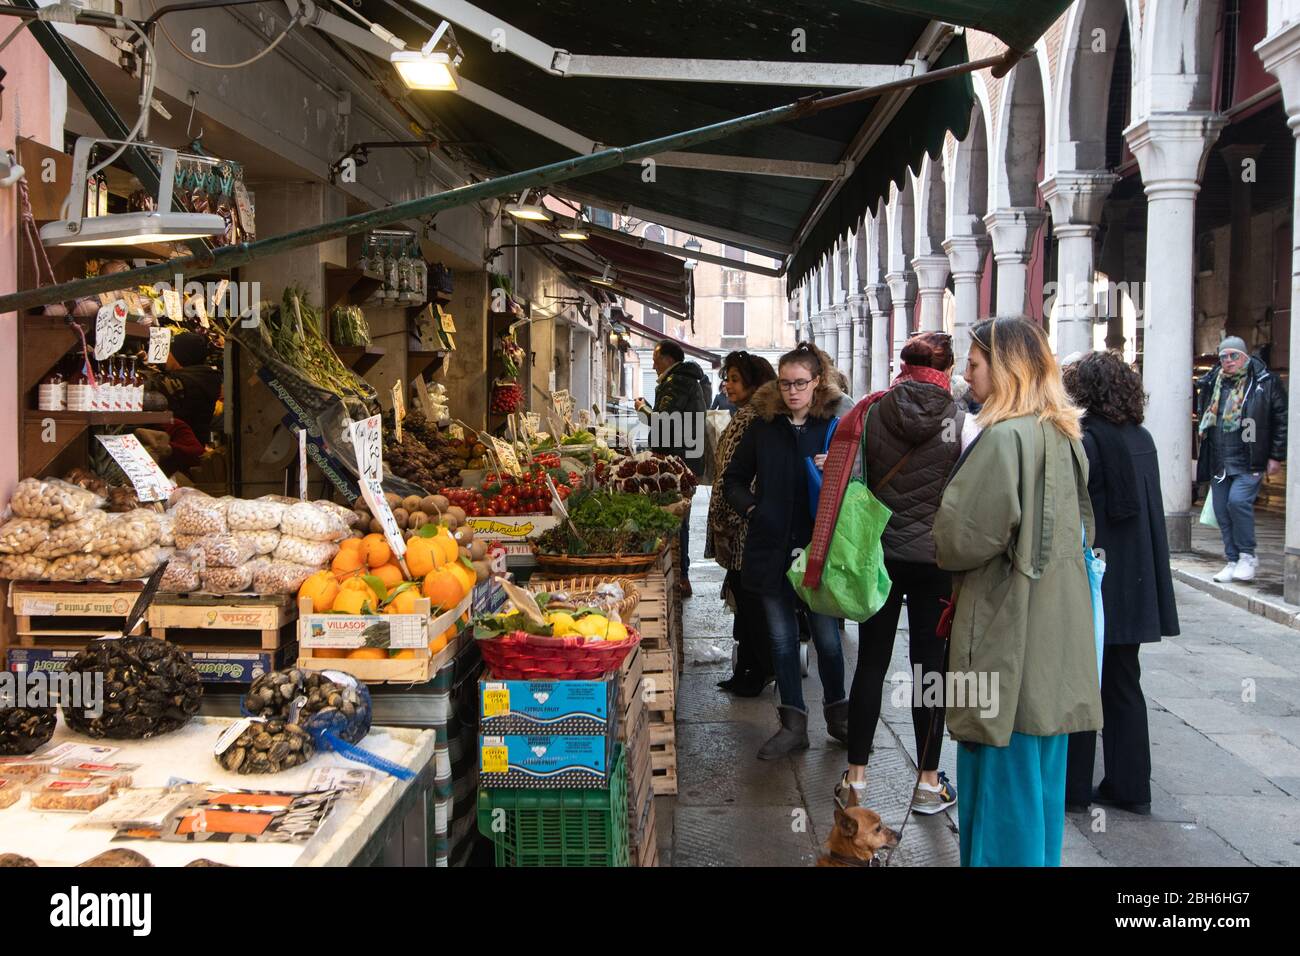 VENEZIA, ITALIA - APRILE 2020: Si acquistano verdure al mercato di Rialto durante la chiusura nazionale per la pandemia Covid-19. Foto Stock